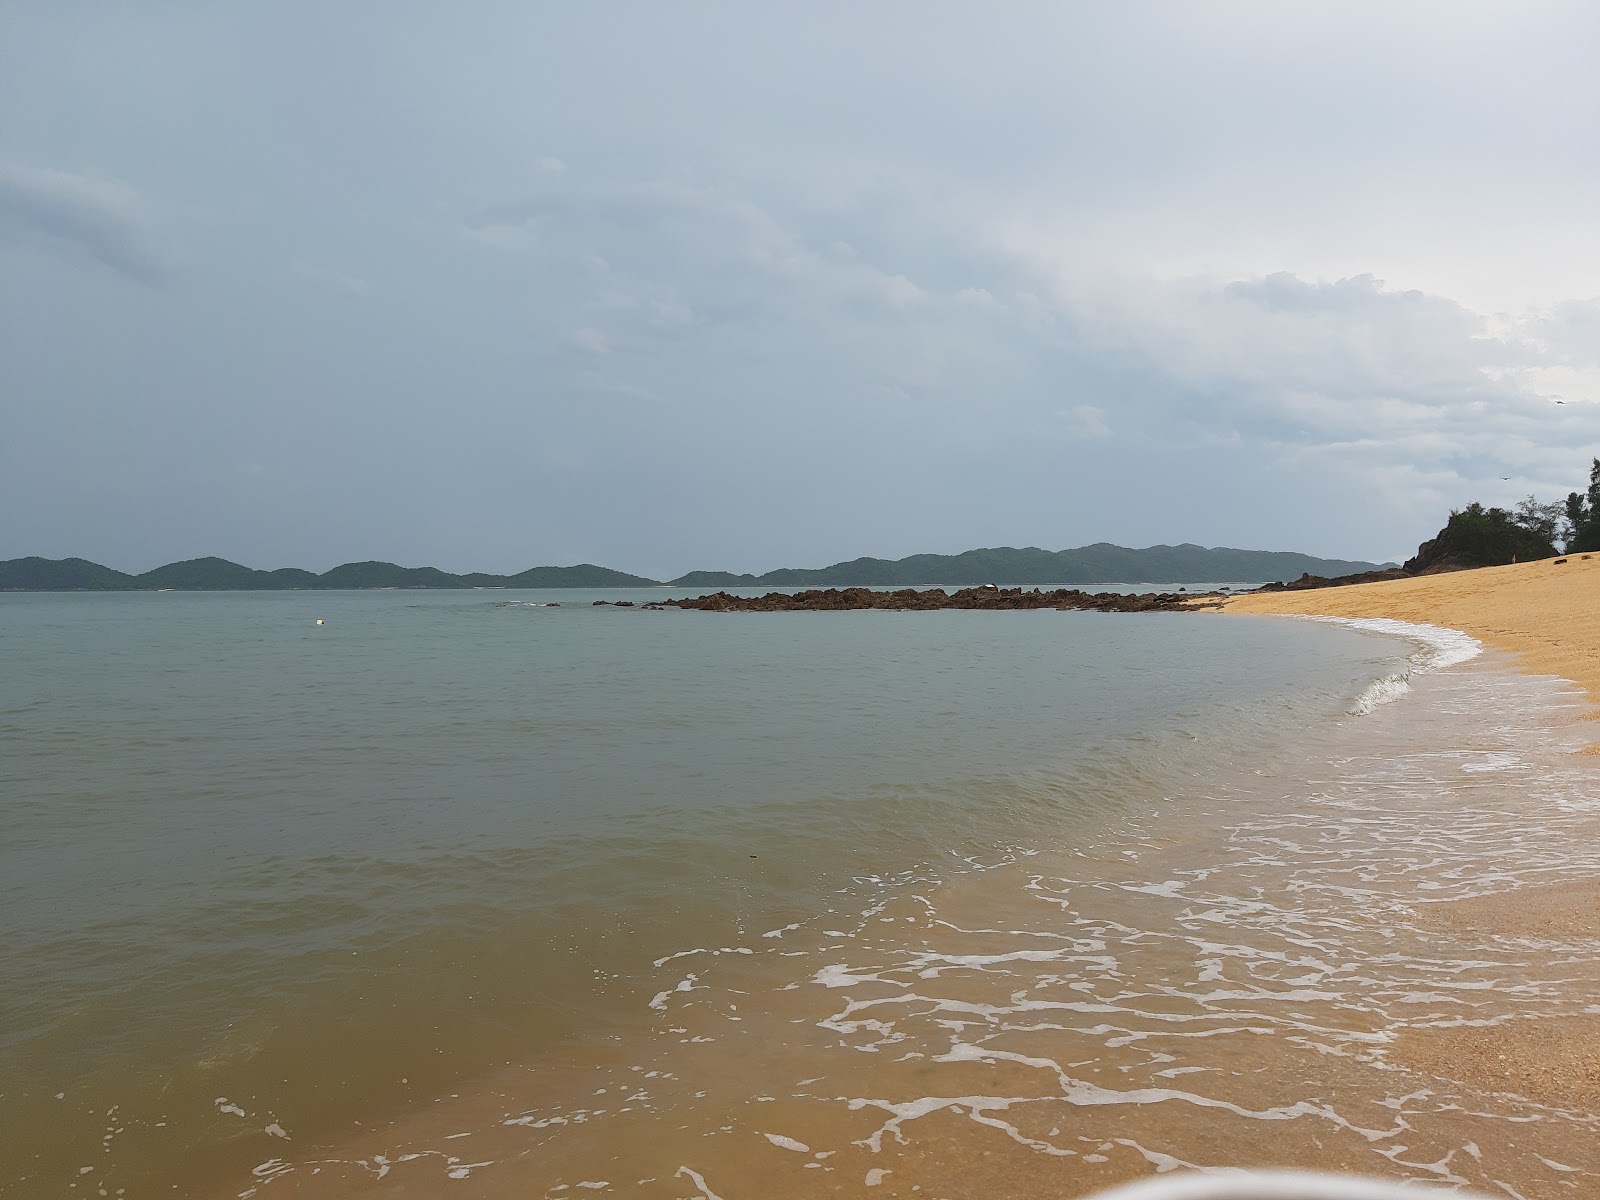 Photo de Cai Chien beach - endroit populaire parmi les connaisseurs de la détente